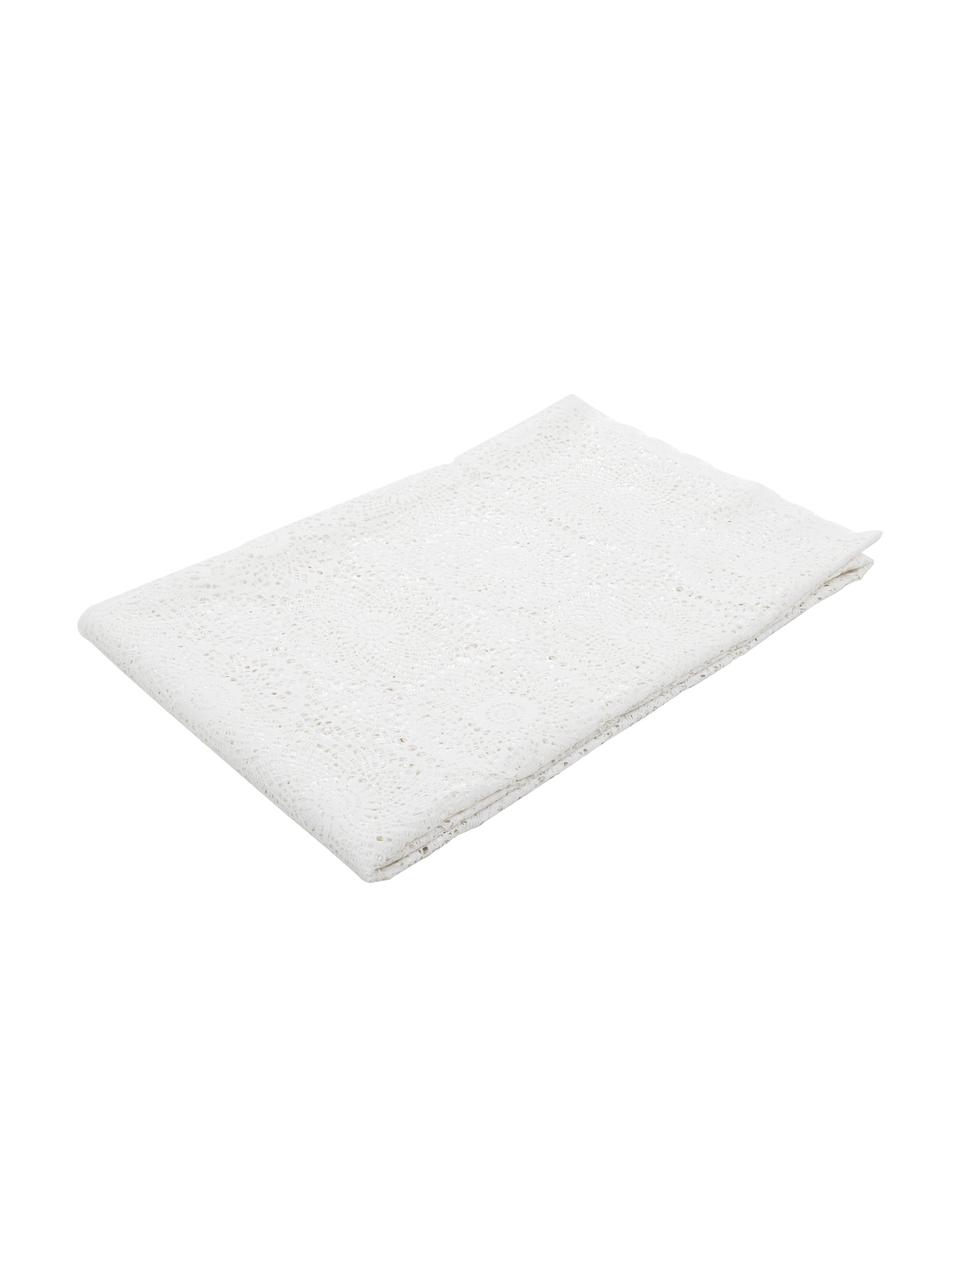 Mantel de plástico Lace, Fibra sintética PVC con aspecto de encaje, Blanco, De 6 a 10 comensales (An 150 x L 264 cm)